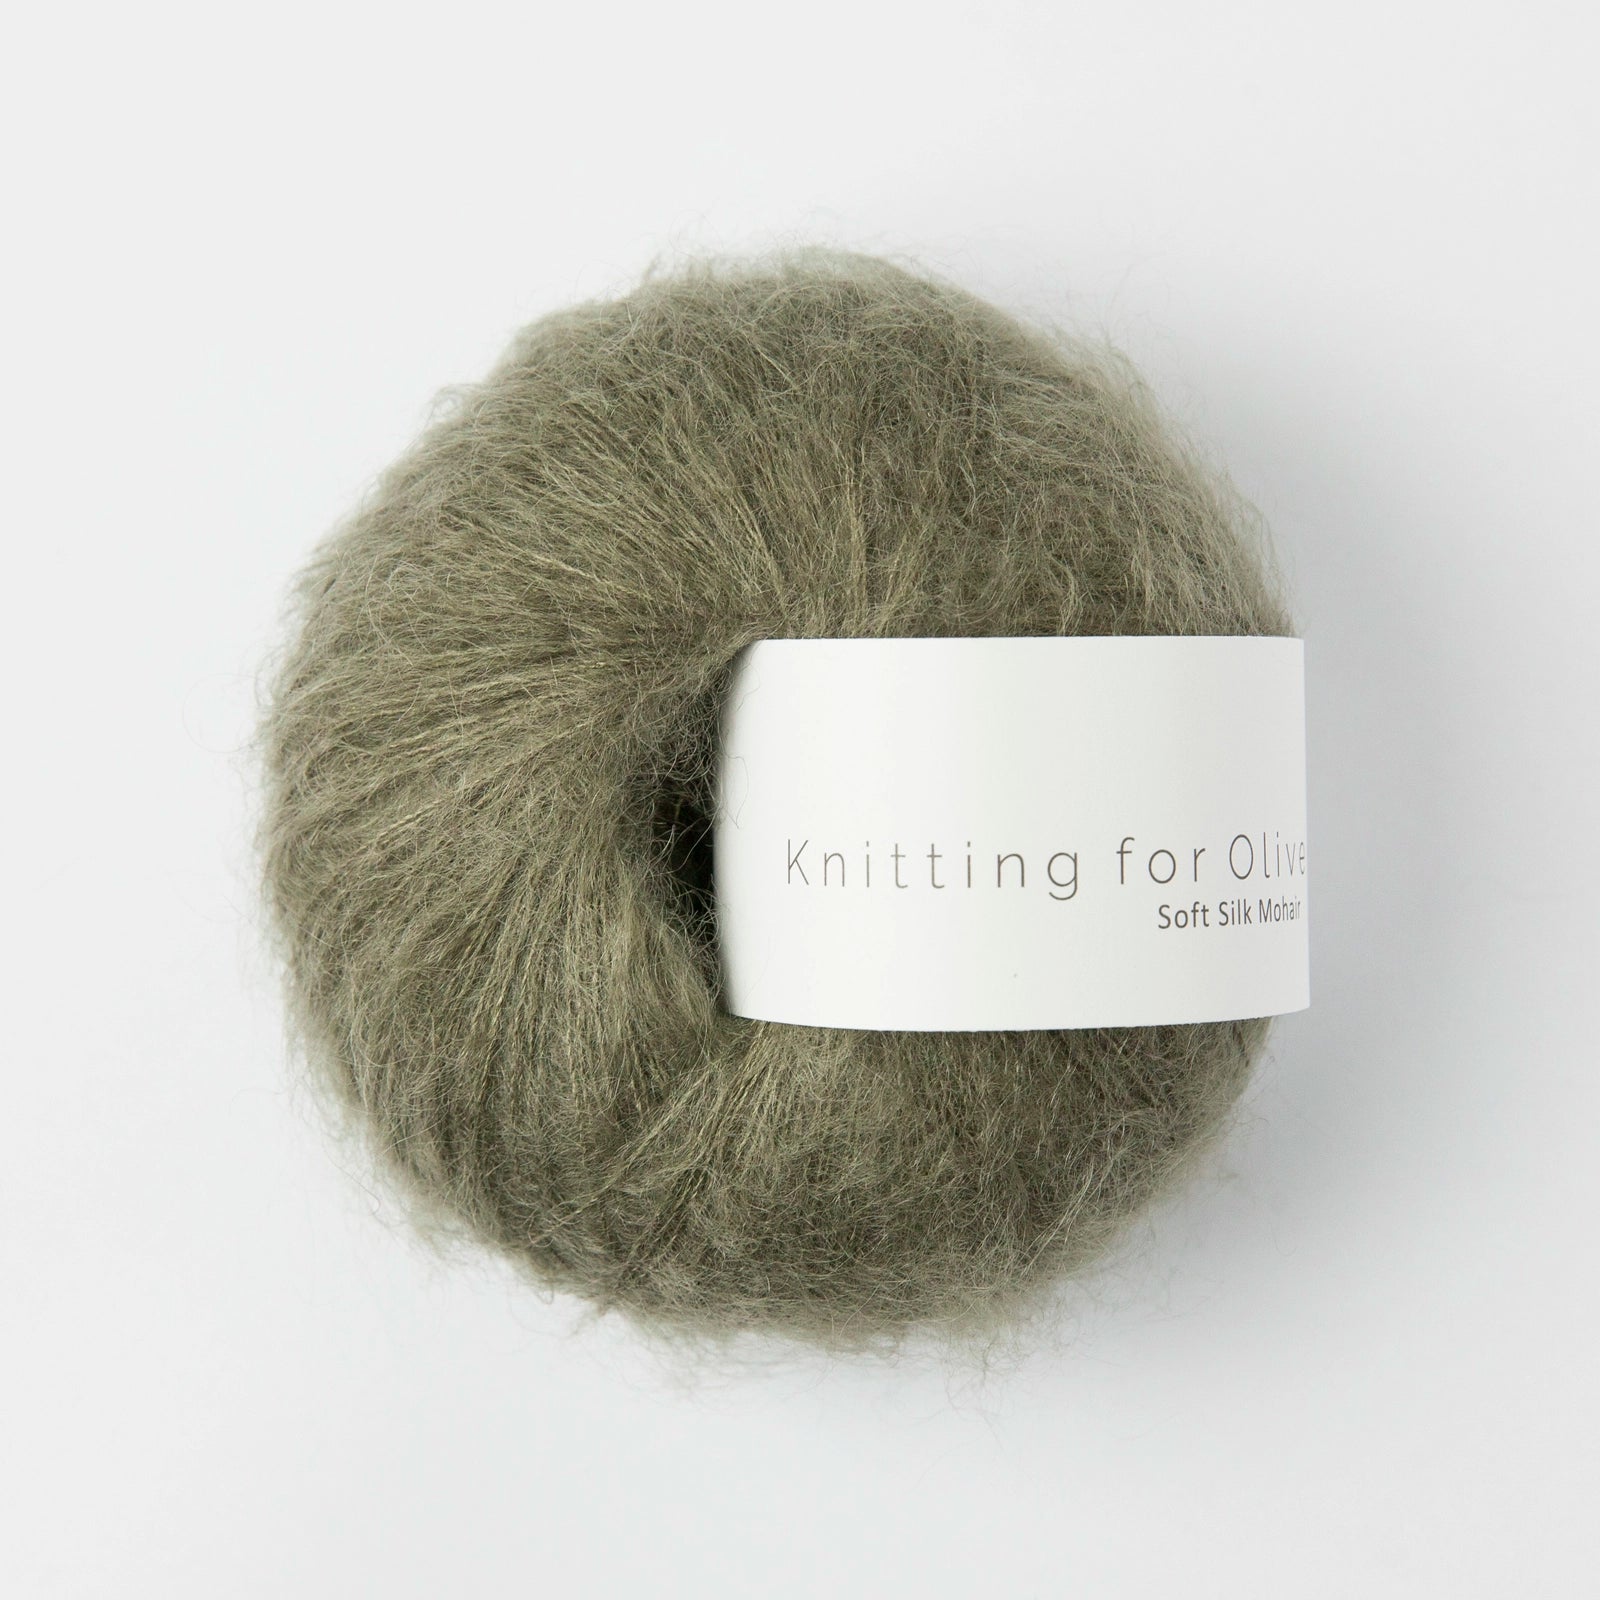 Soft Silk Mohair von KNITTING FOR OLIVE jetzt online kaufen bei OONIQUE